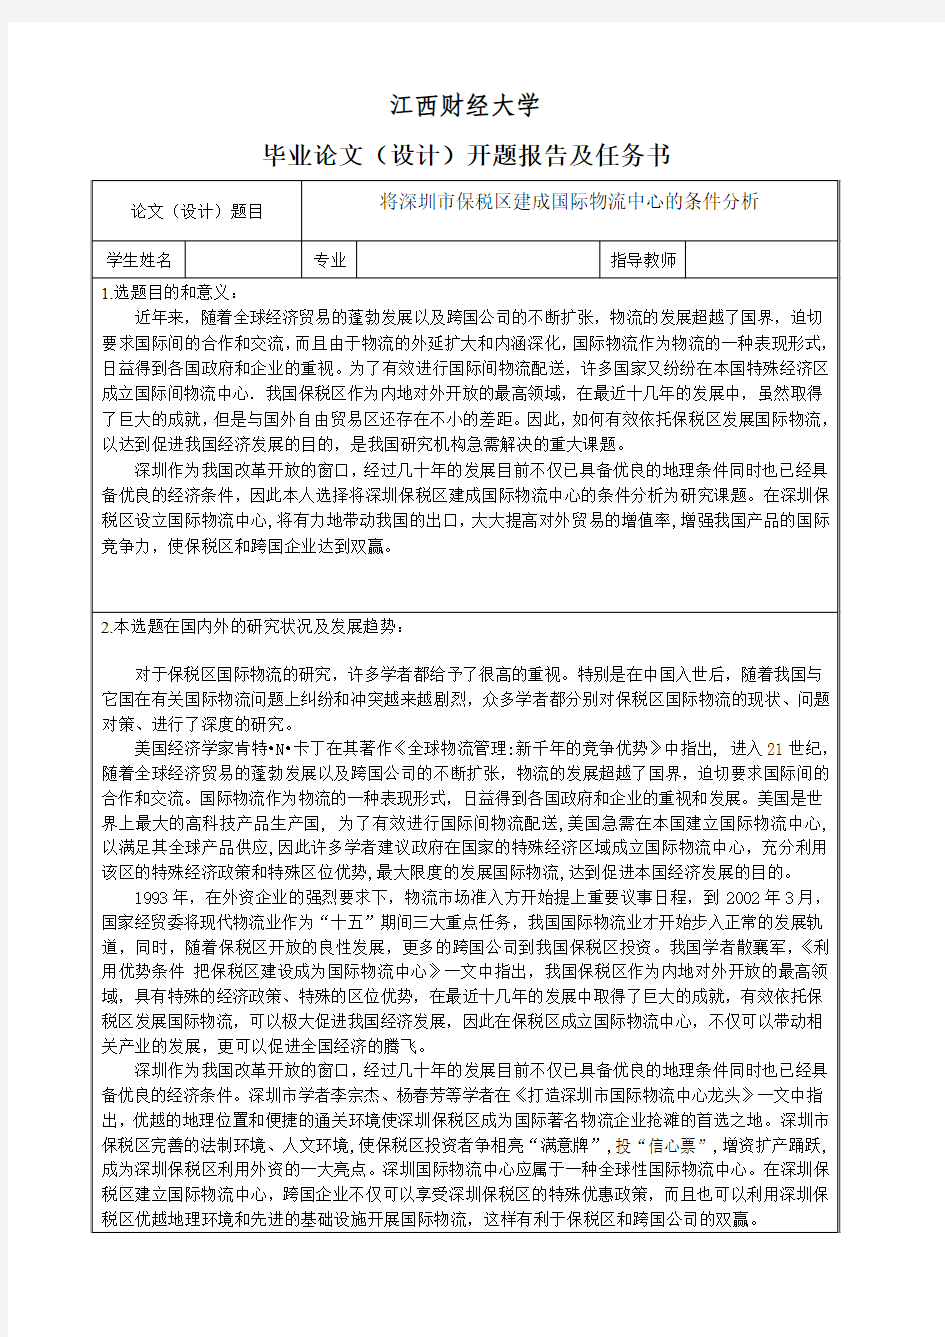 将深圳市保税区建成国际物流中心条件分析-开题报告及任务书